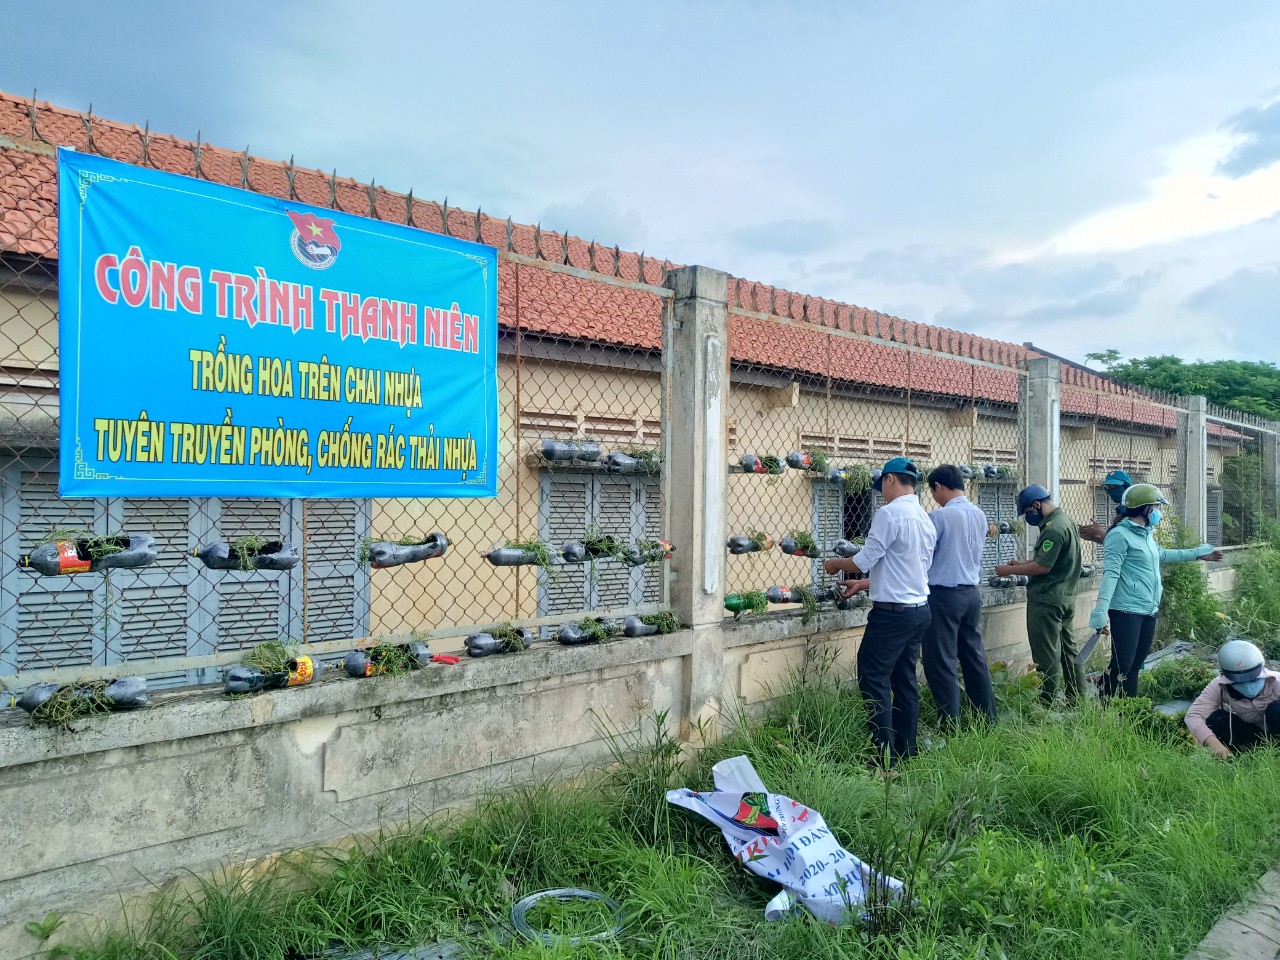 Đoàn xã Nhơn Ninh thực hiện công trình Trồng hoa trên chai nhựa